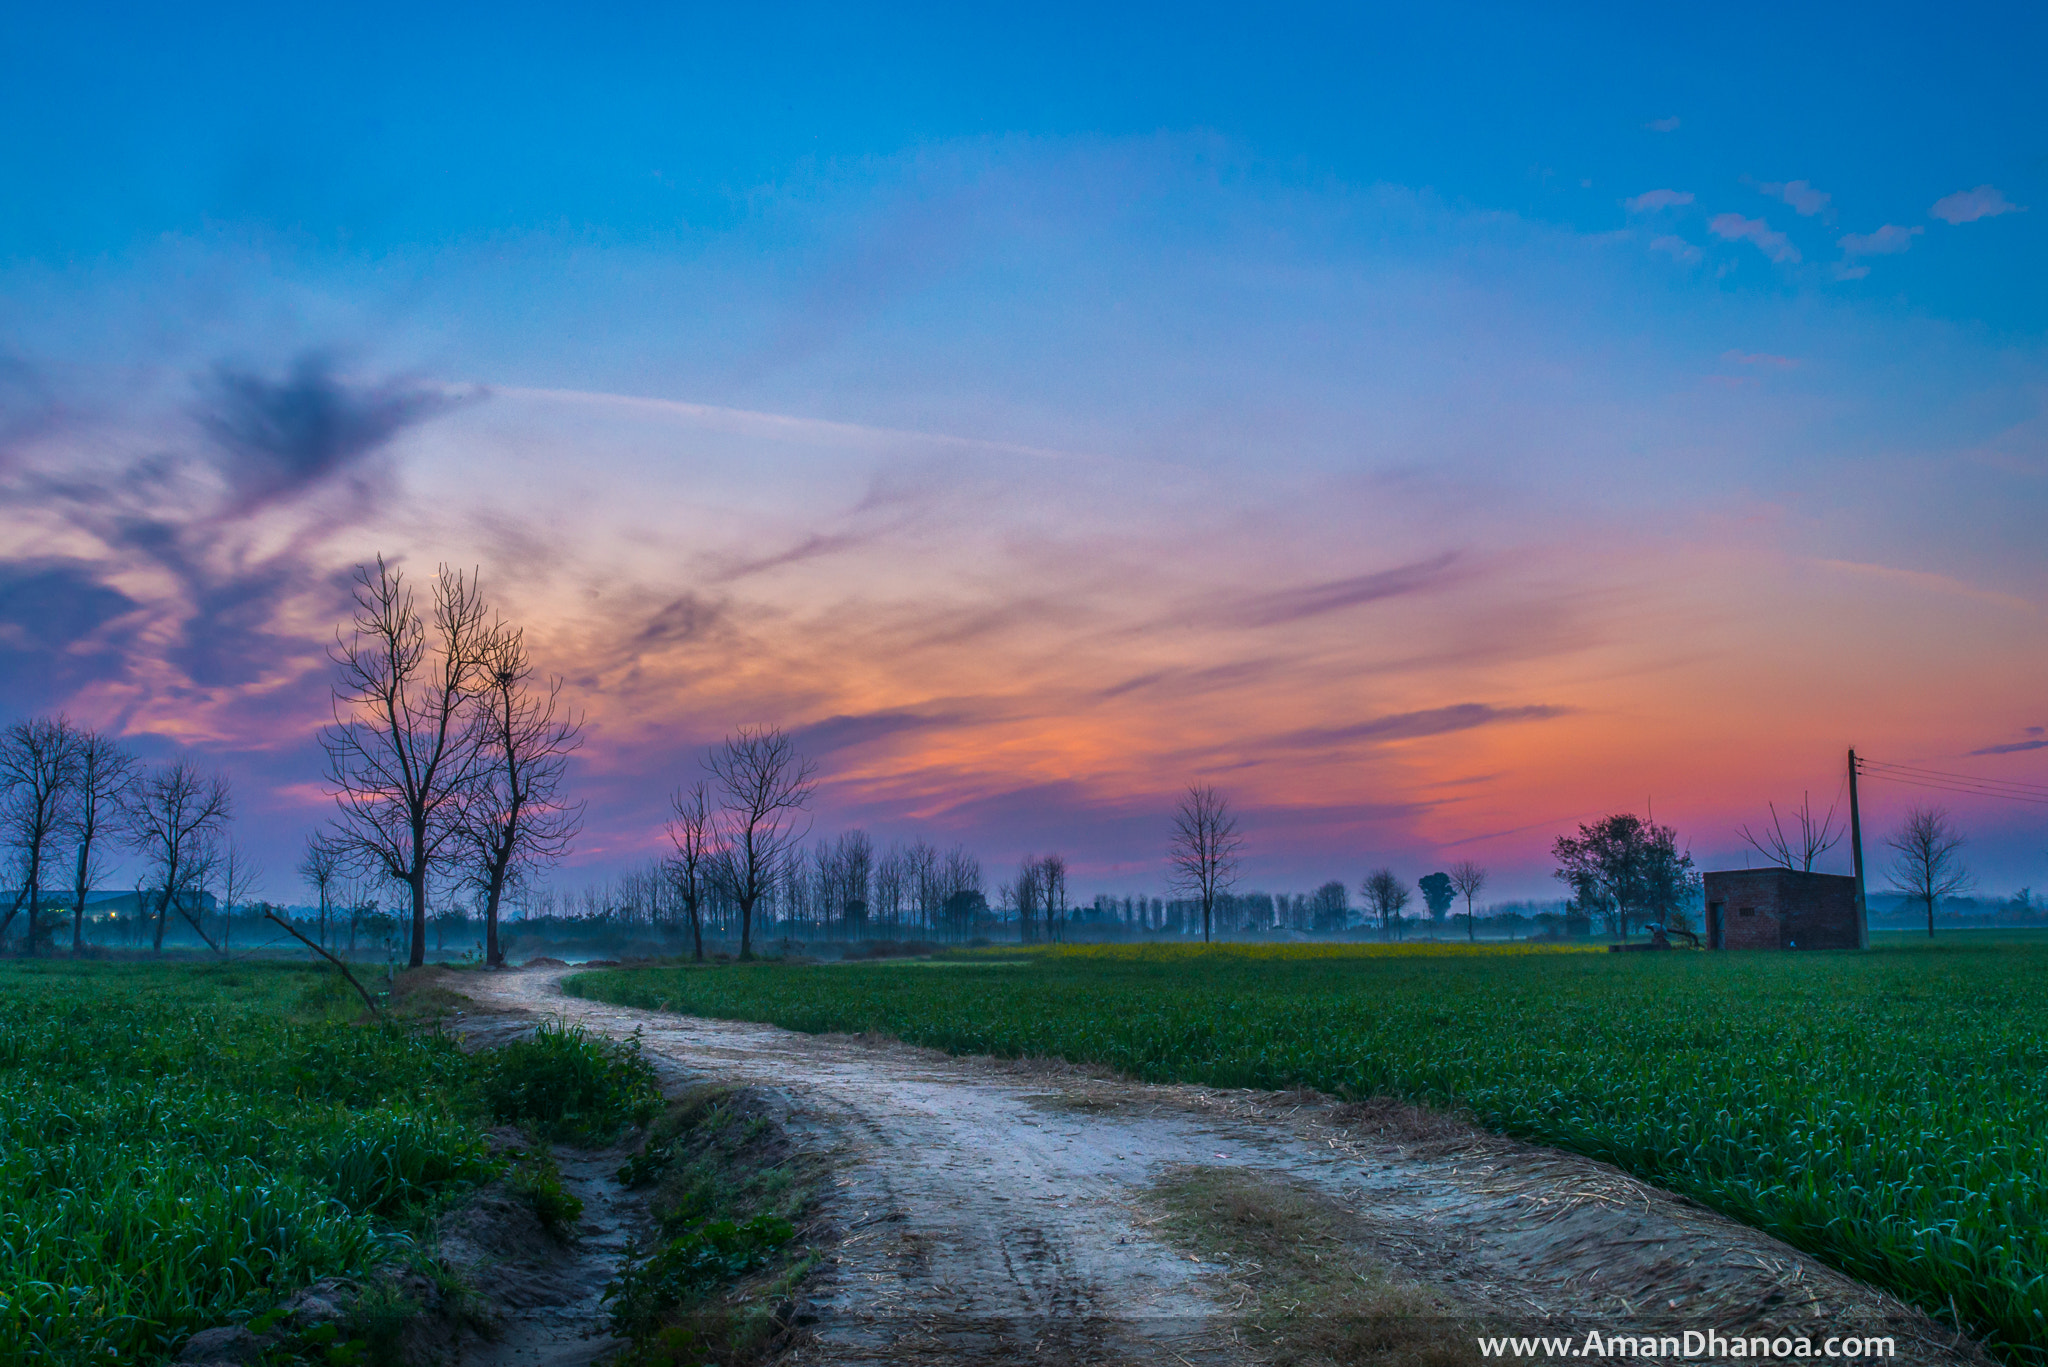 Nikon D610 + AF Zoom-Nikkor 28-80mm f/3.3-5.6G sample photo. Colourful sunset in a village photography